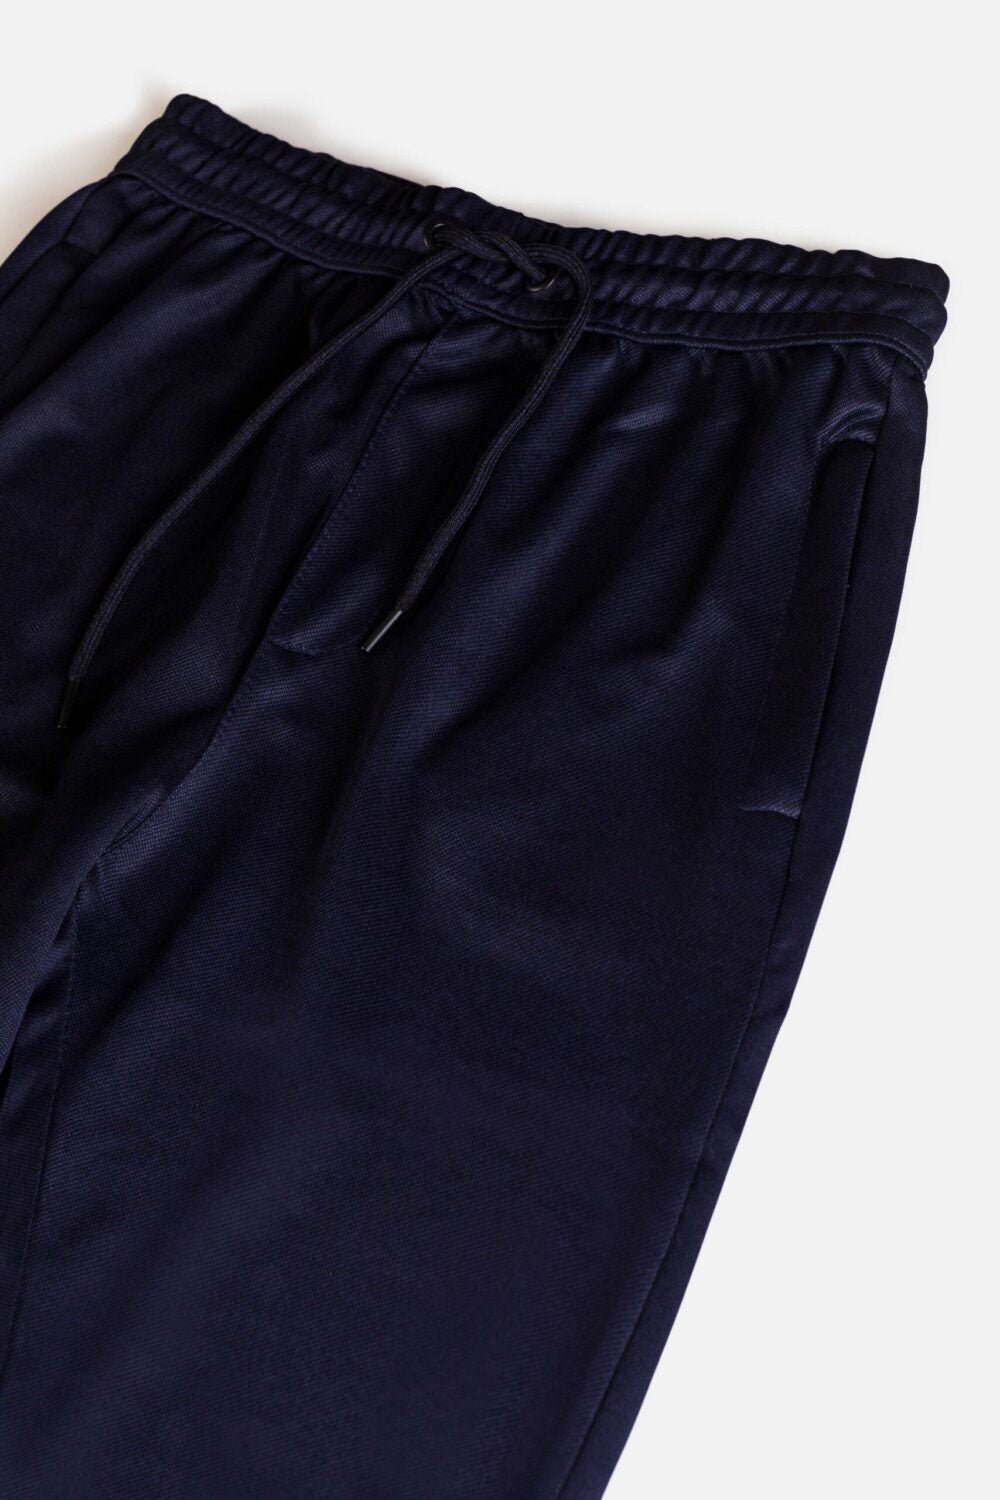 Dri-FIT Navy Blue Plain Trouser